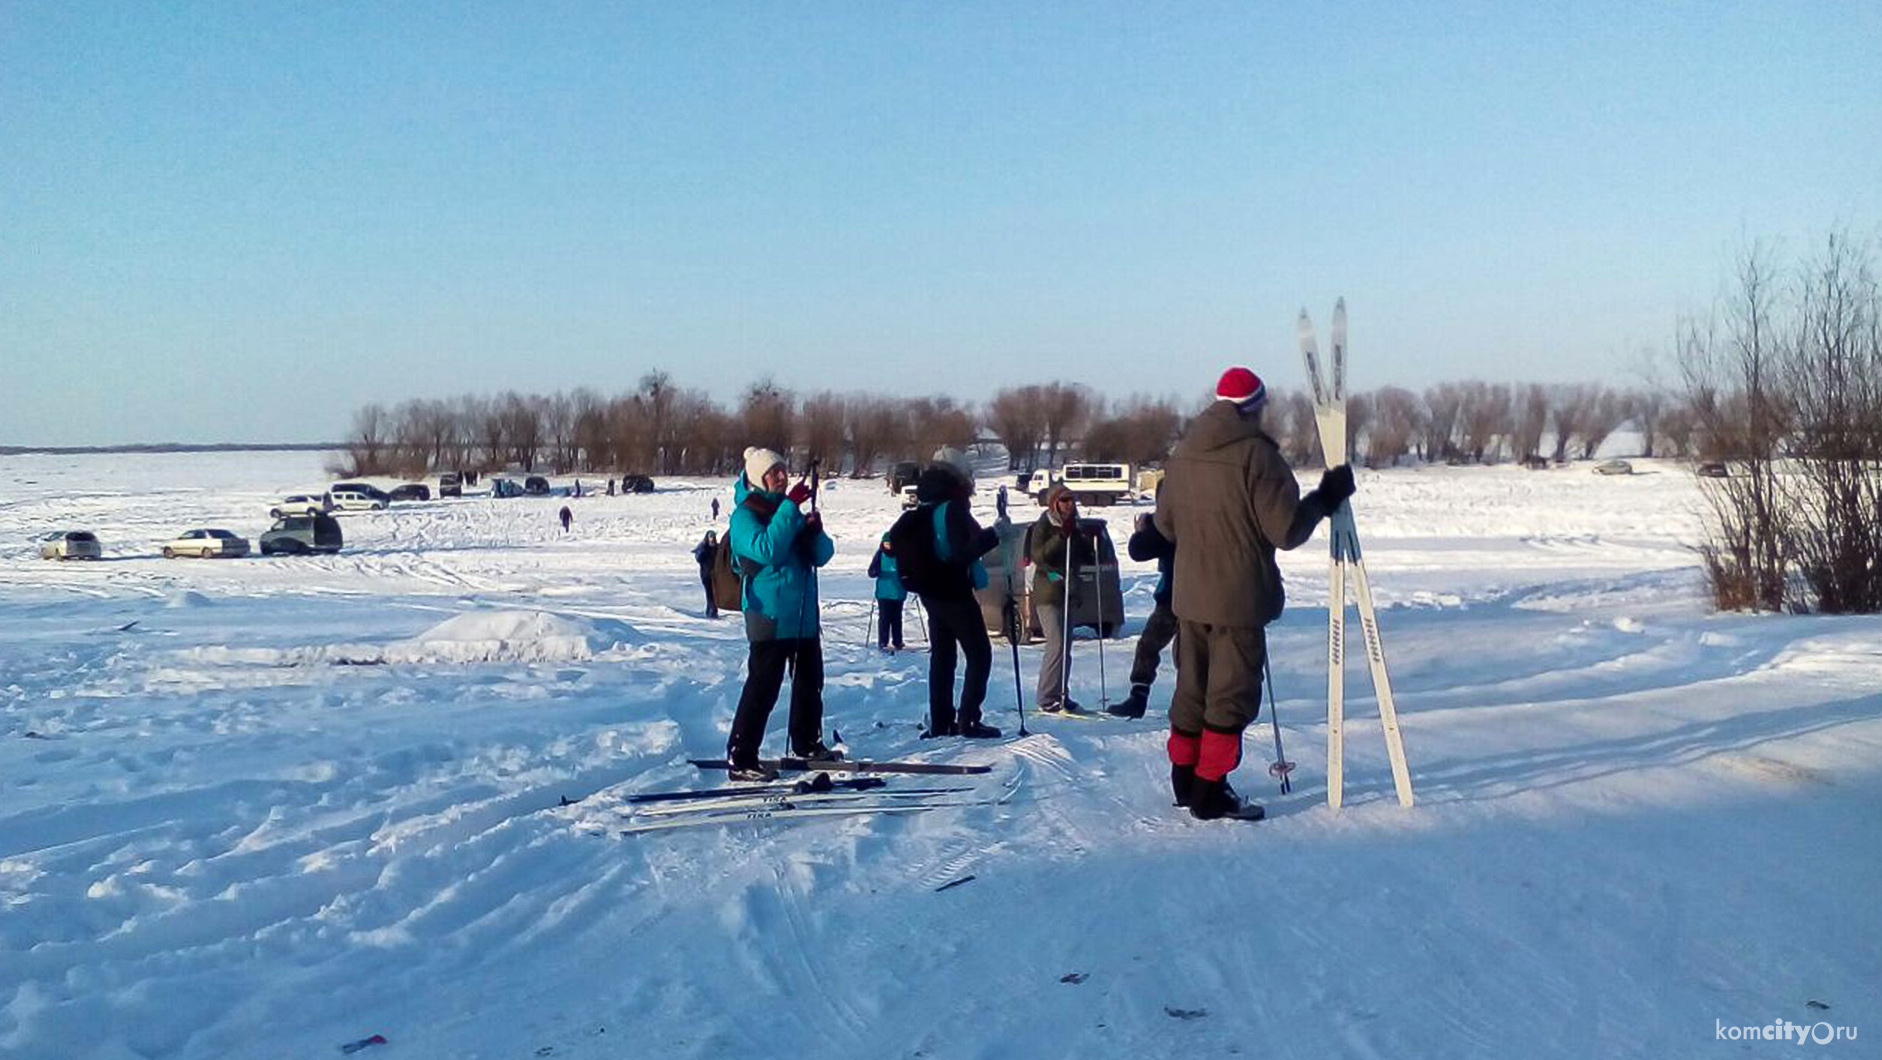 Пункт первый: Участники лыжного перехода из Хабаровска в Комсомольск успешно дошли до села Мичуринского